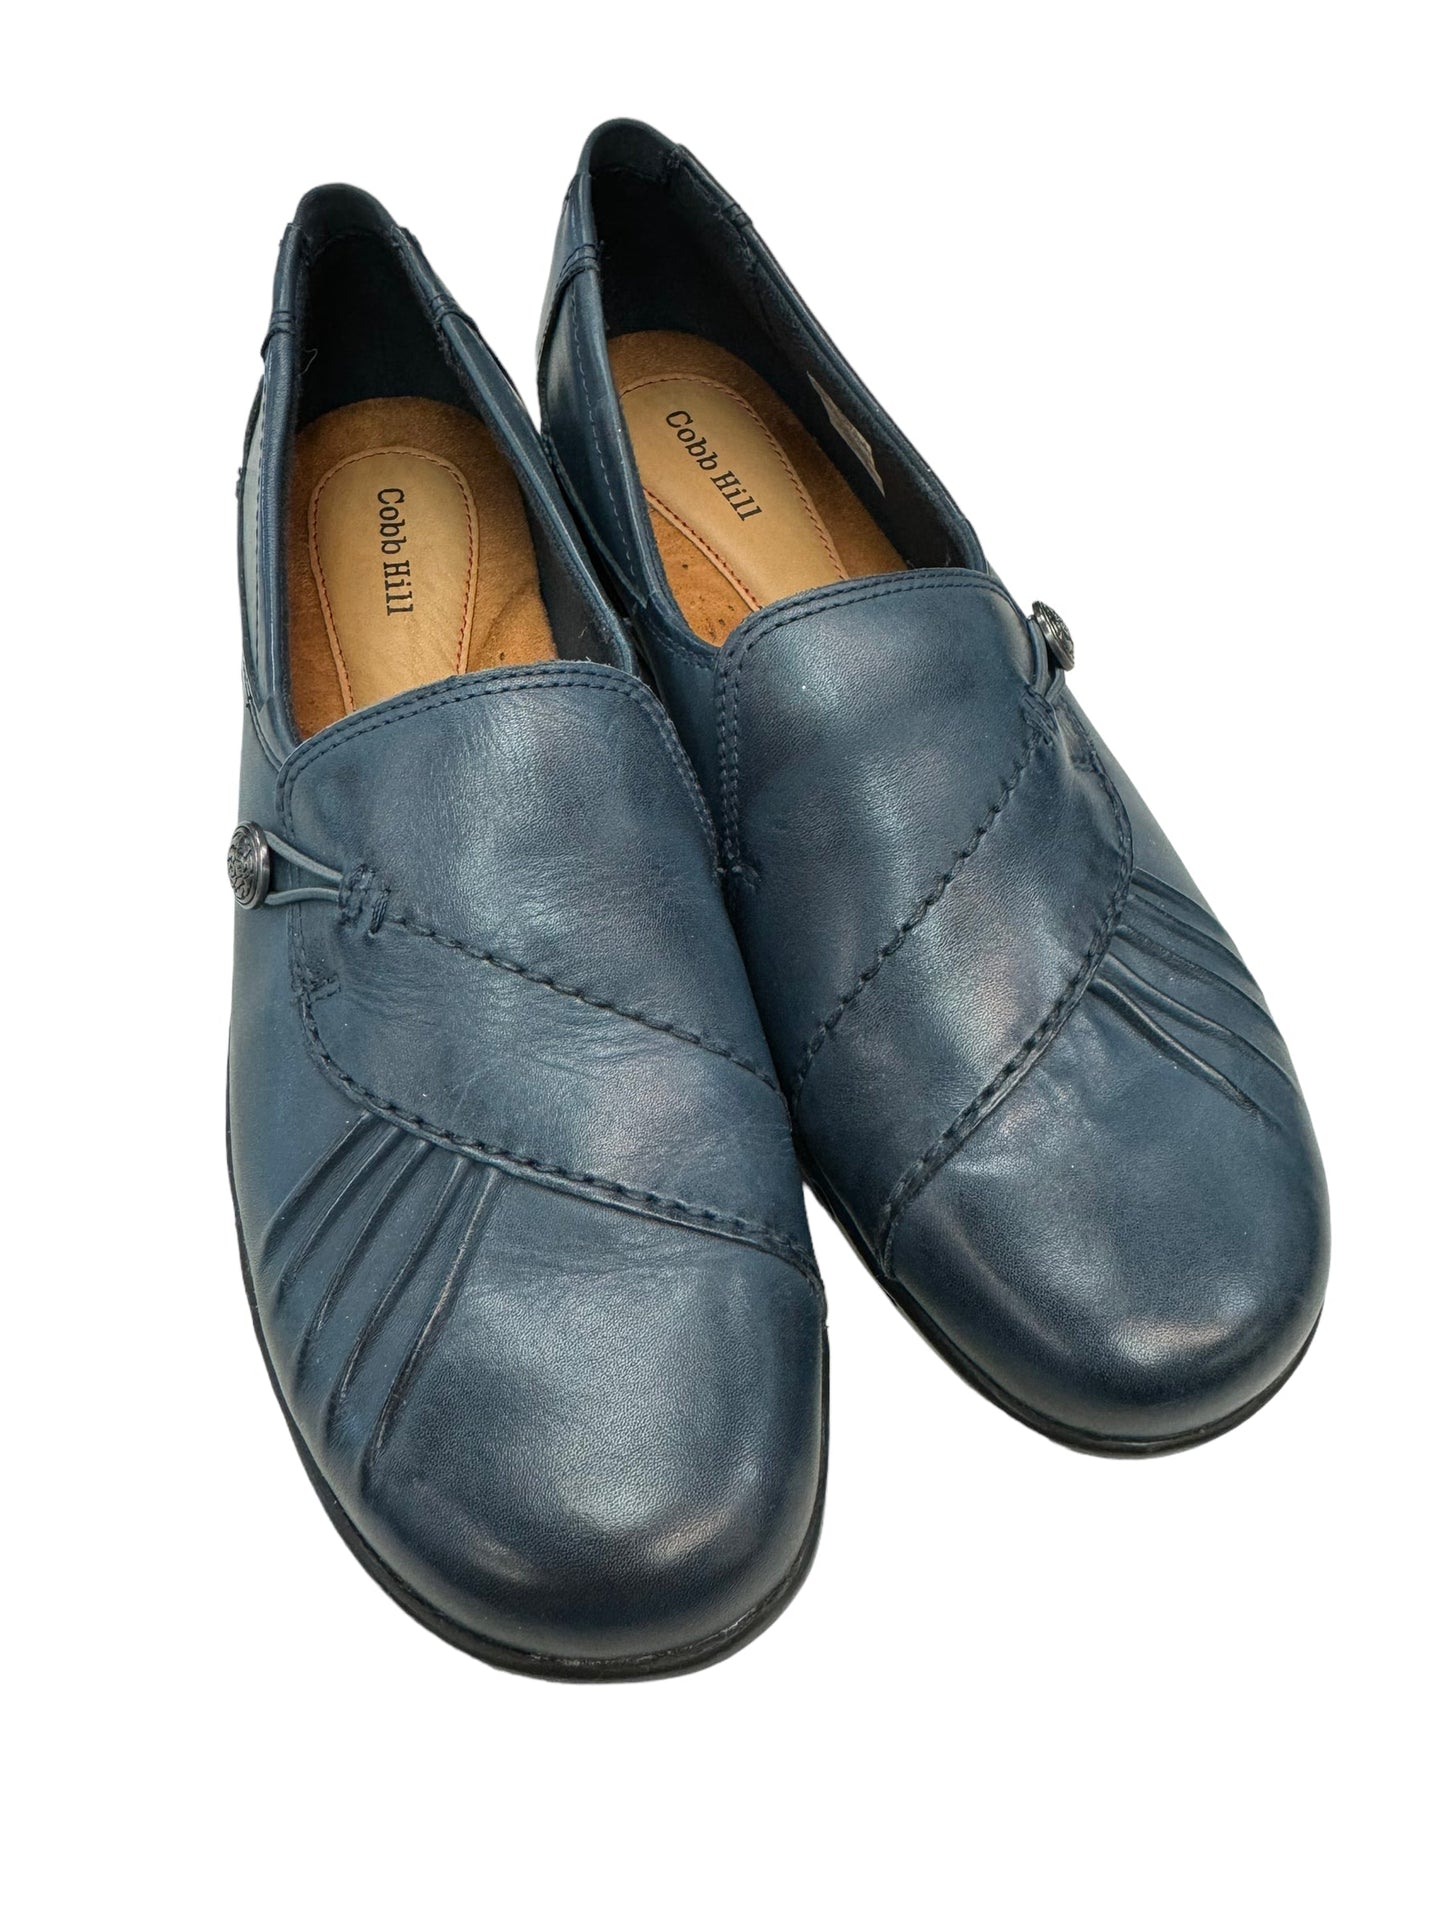 Blue Shoes Flats Cobb Hill, Size 10